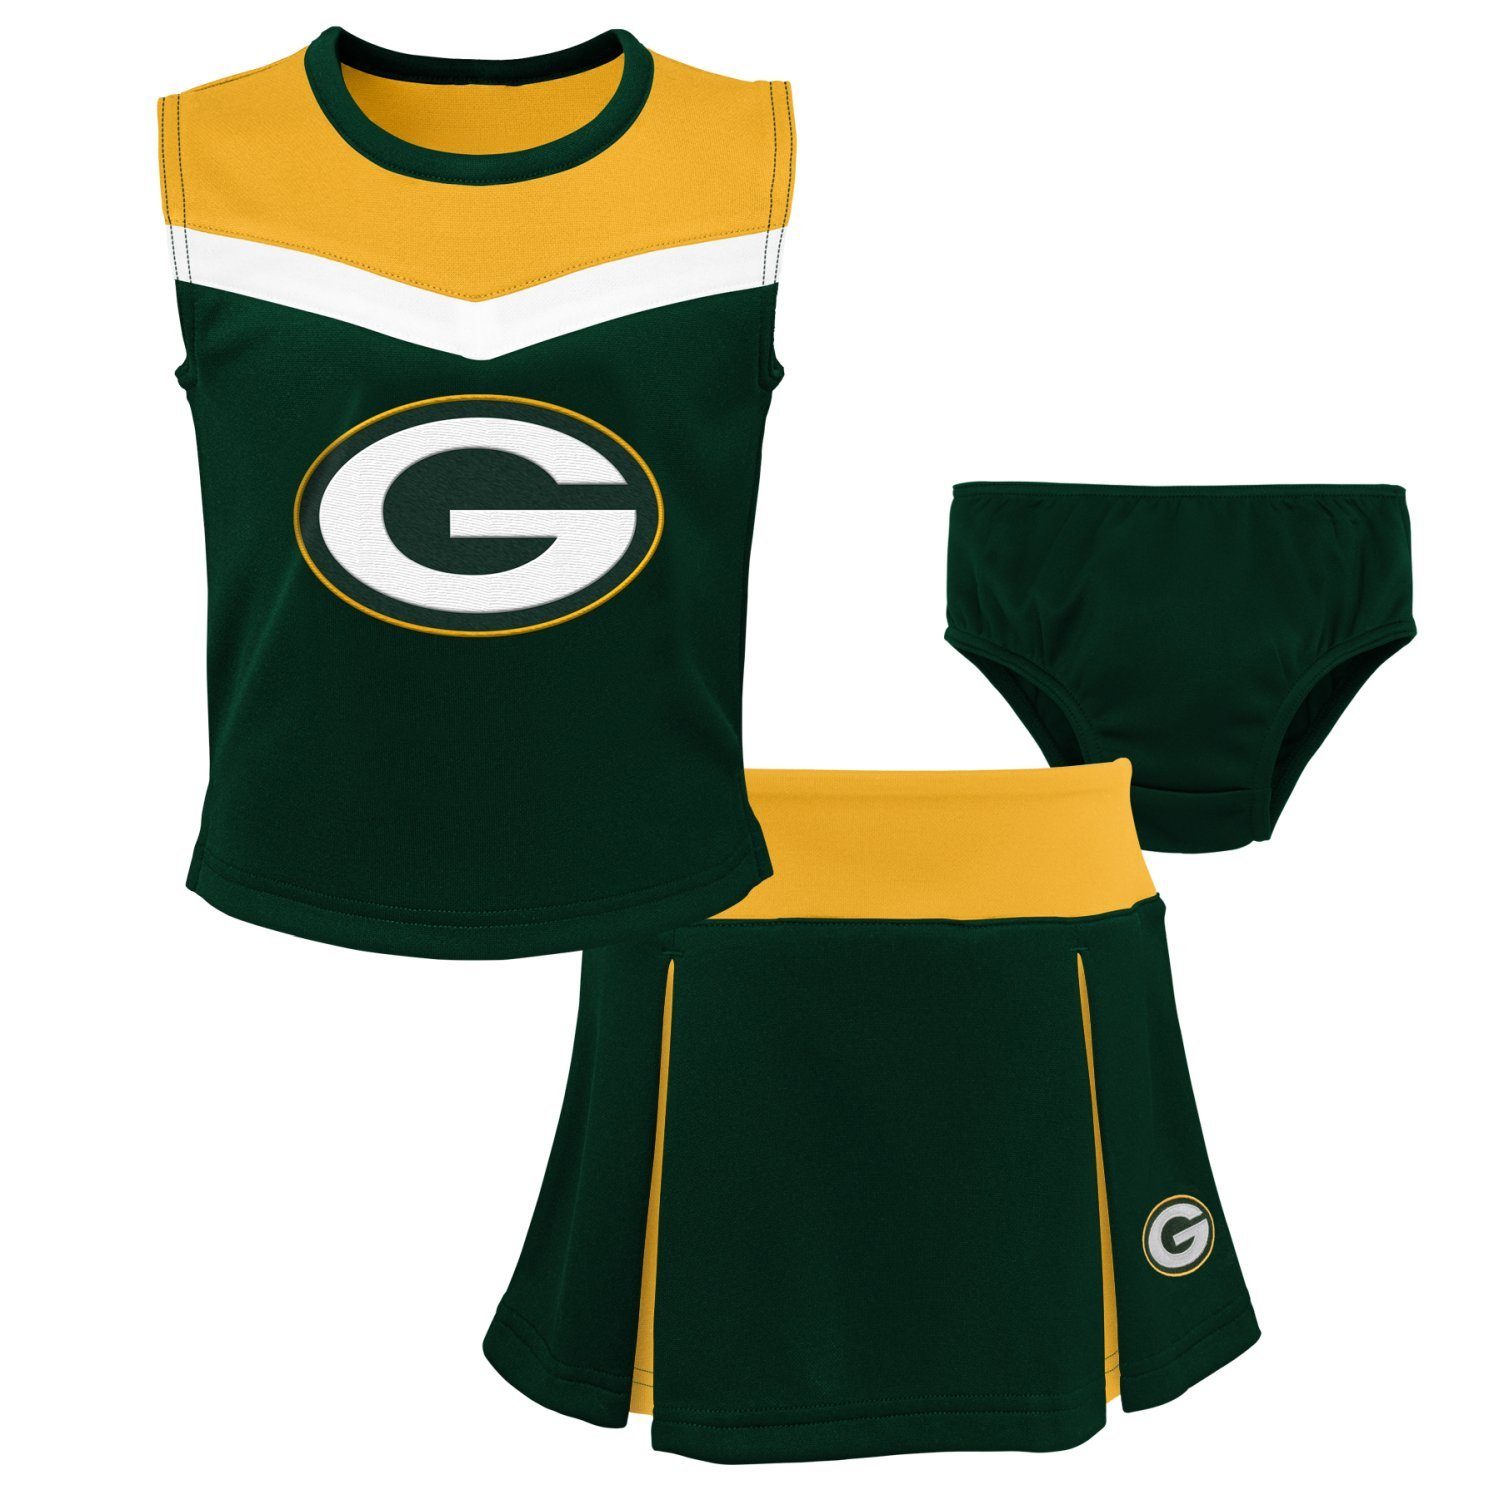 Outerstuff Print-Shirt NFL Cheerleader Set Green Bay Packers